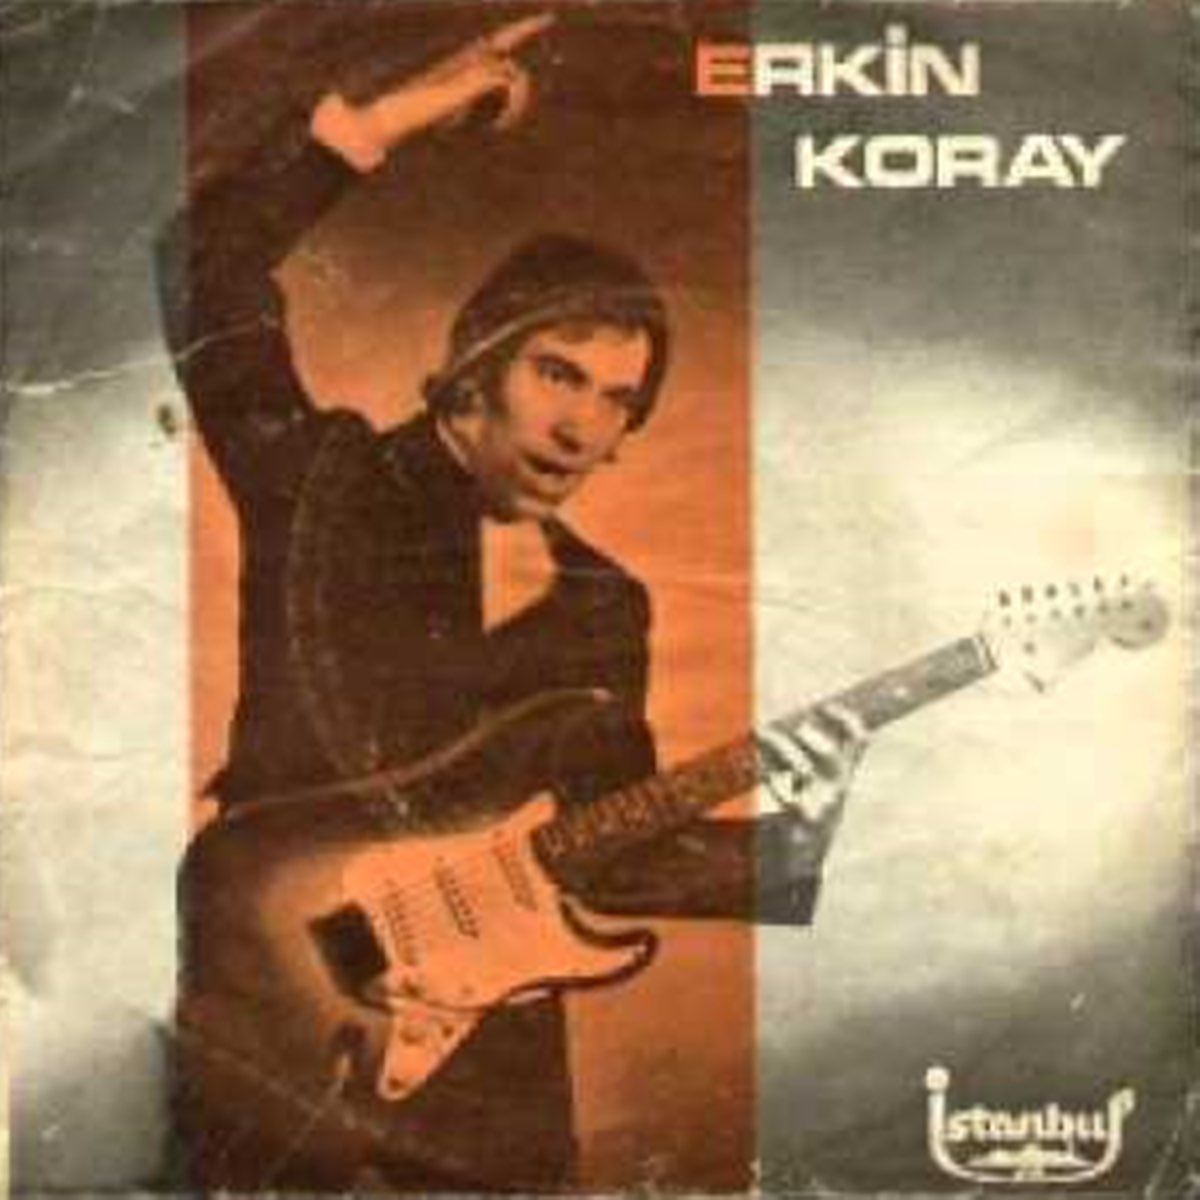 Kendim Ettim Kendim Buldum - Single - Album by Erkin Koray - Apple Music